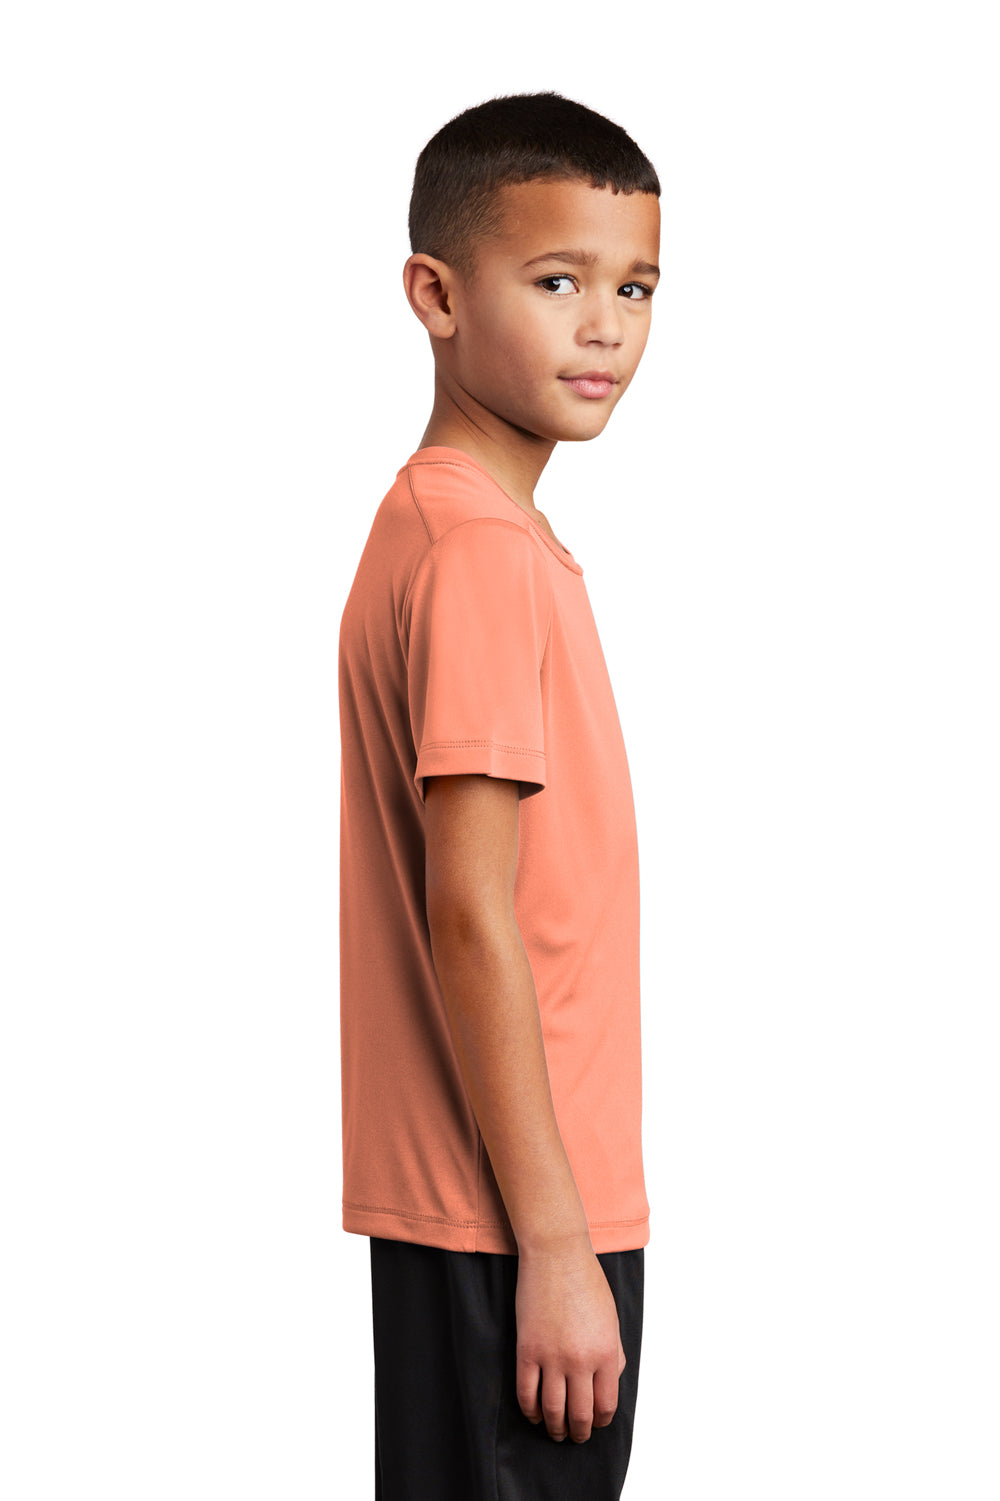 Sport-Tek Youth Short Sleeve Crewneck T-Shirt Soft Coral Orange Side